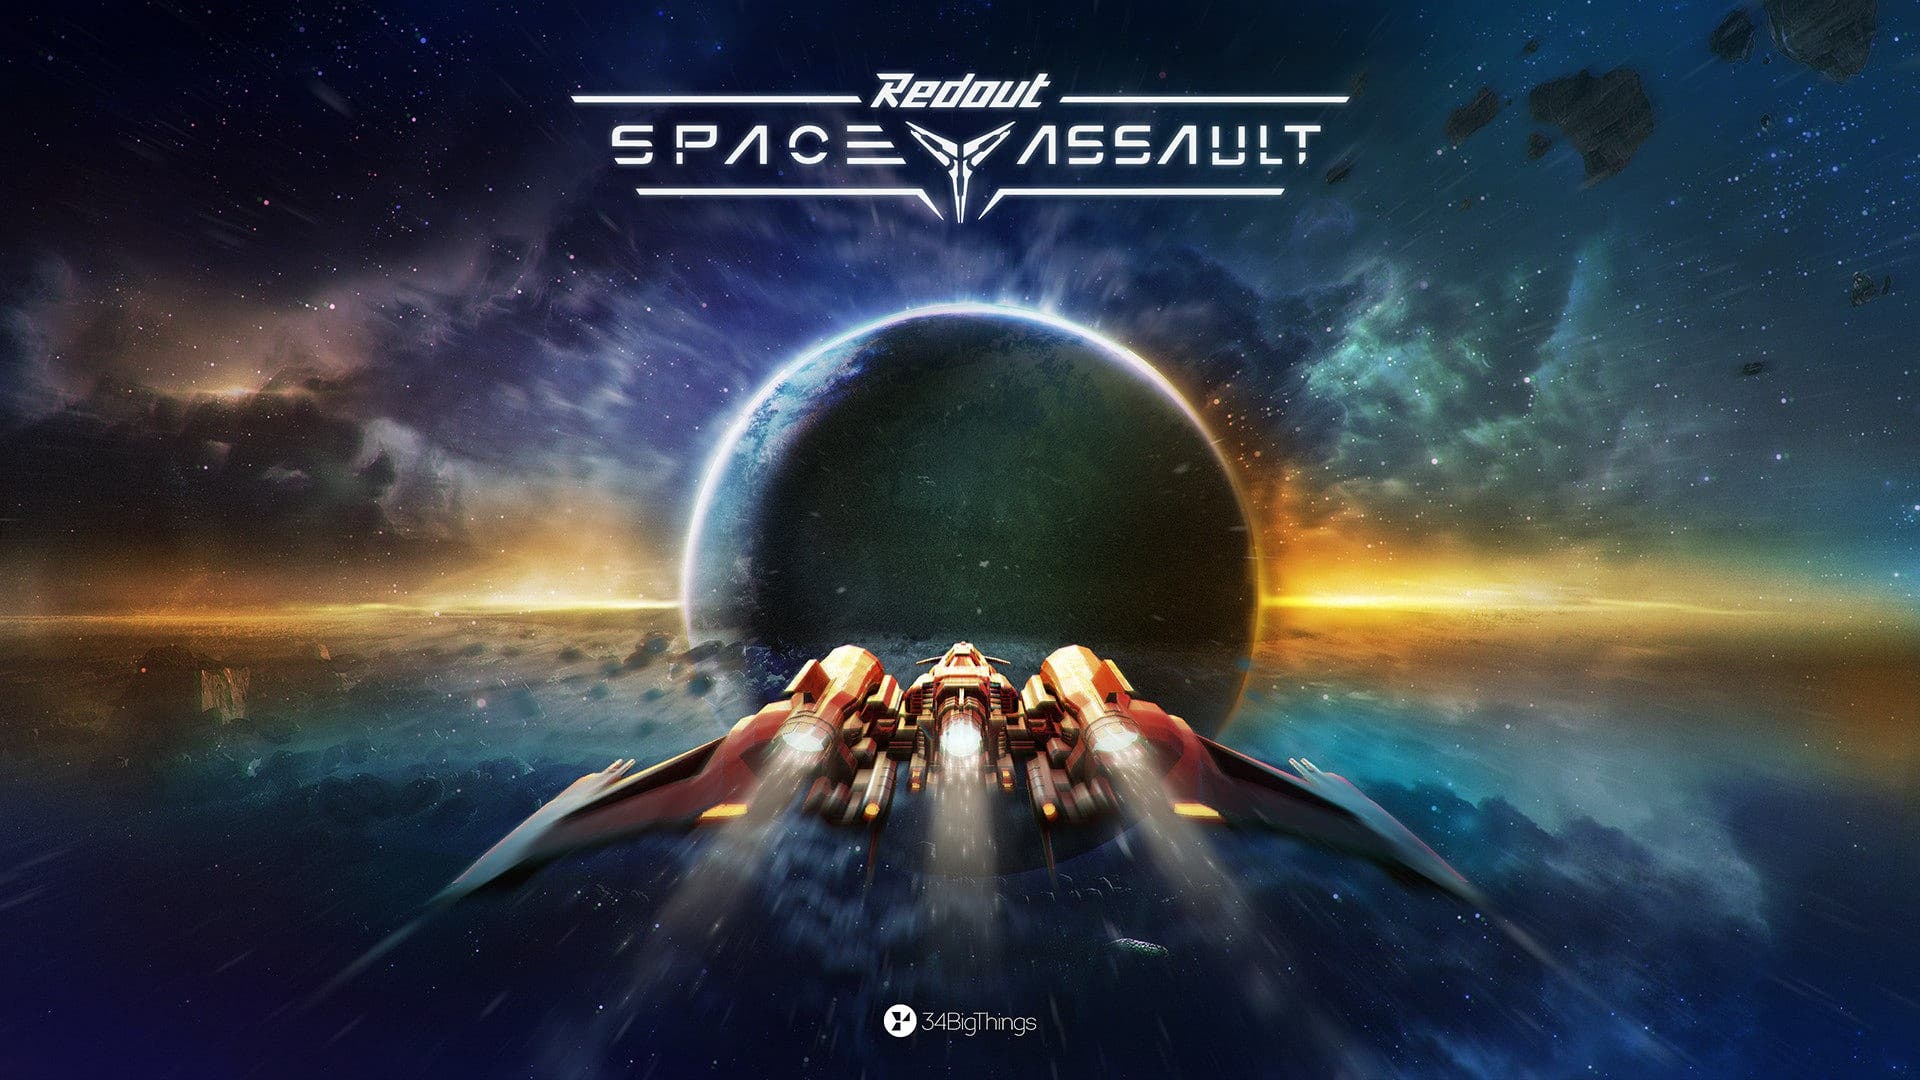 Redout: Space Assault se estrenará el 22 de enero en Nintendo Switch